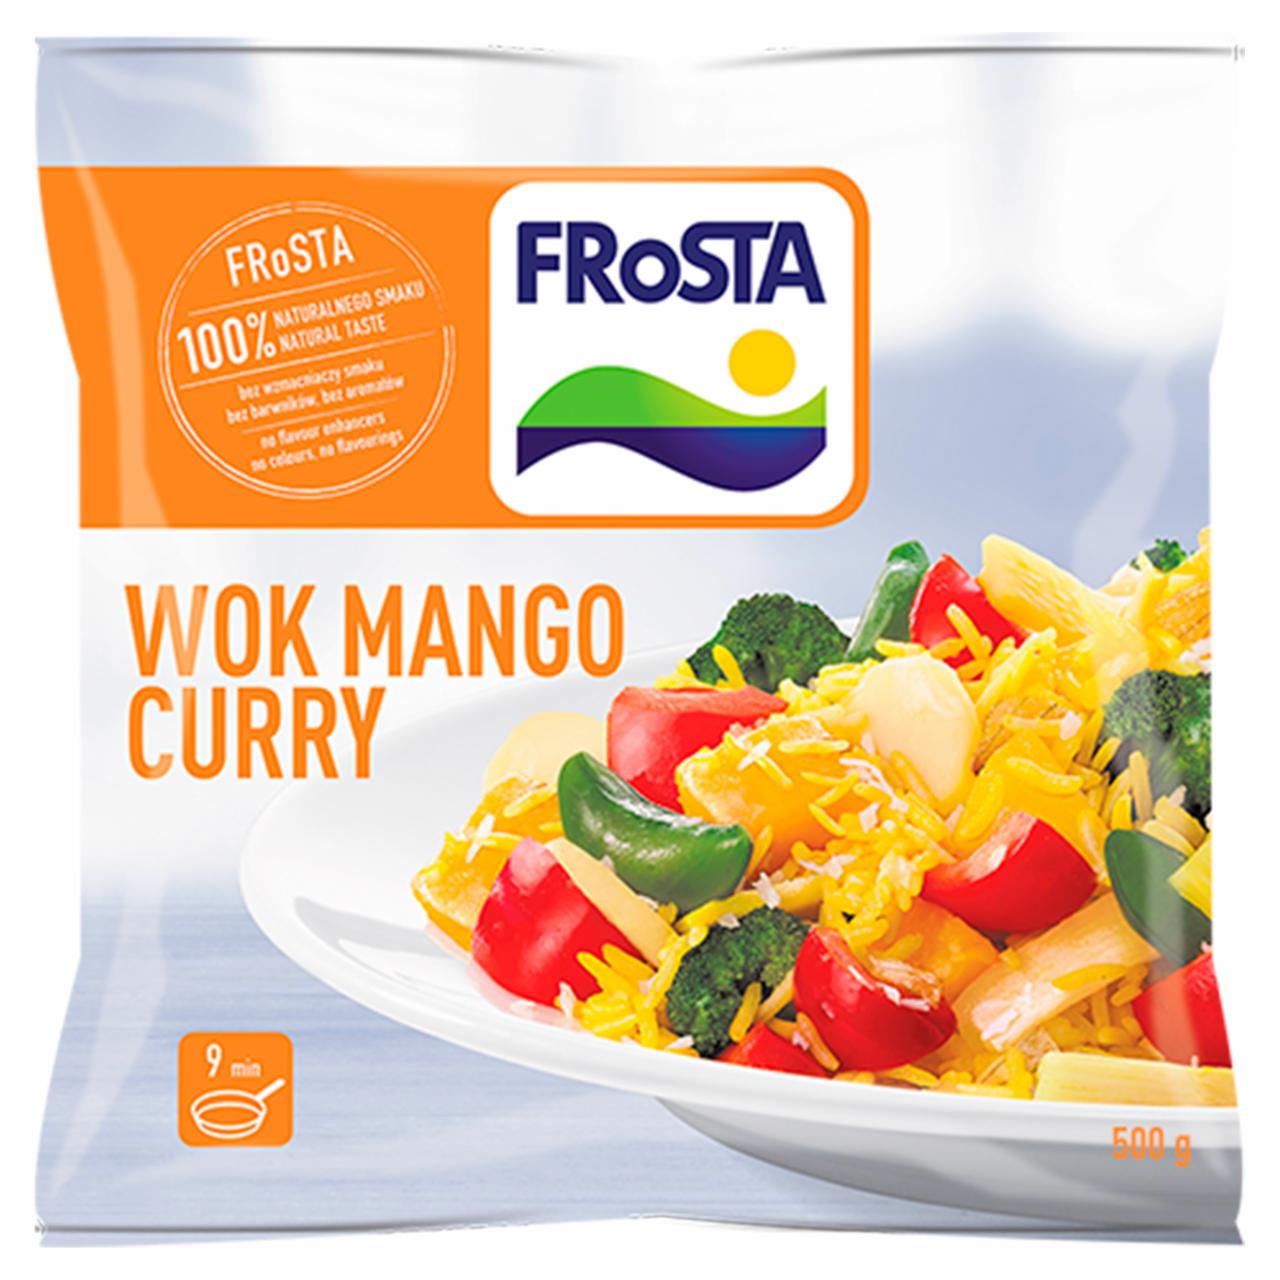 Zdjęcia - FRoSTA Wok mango curry 500 g